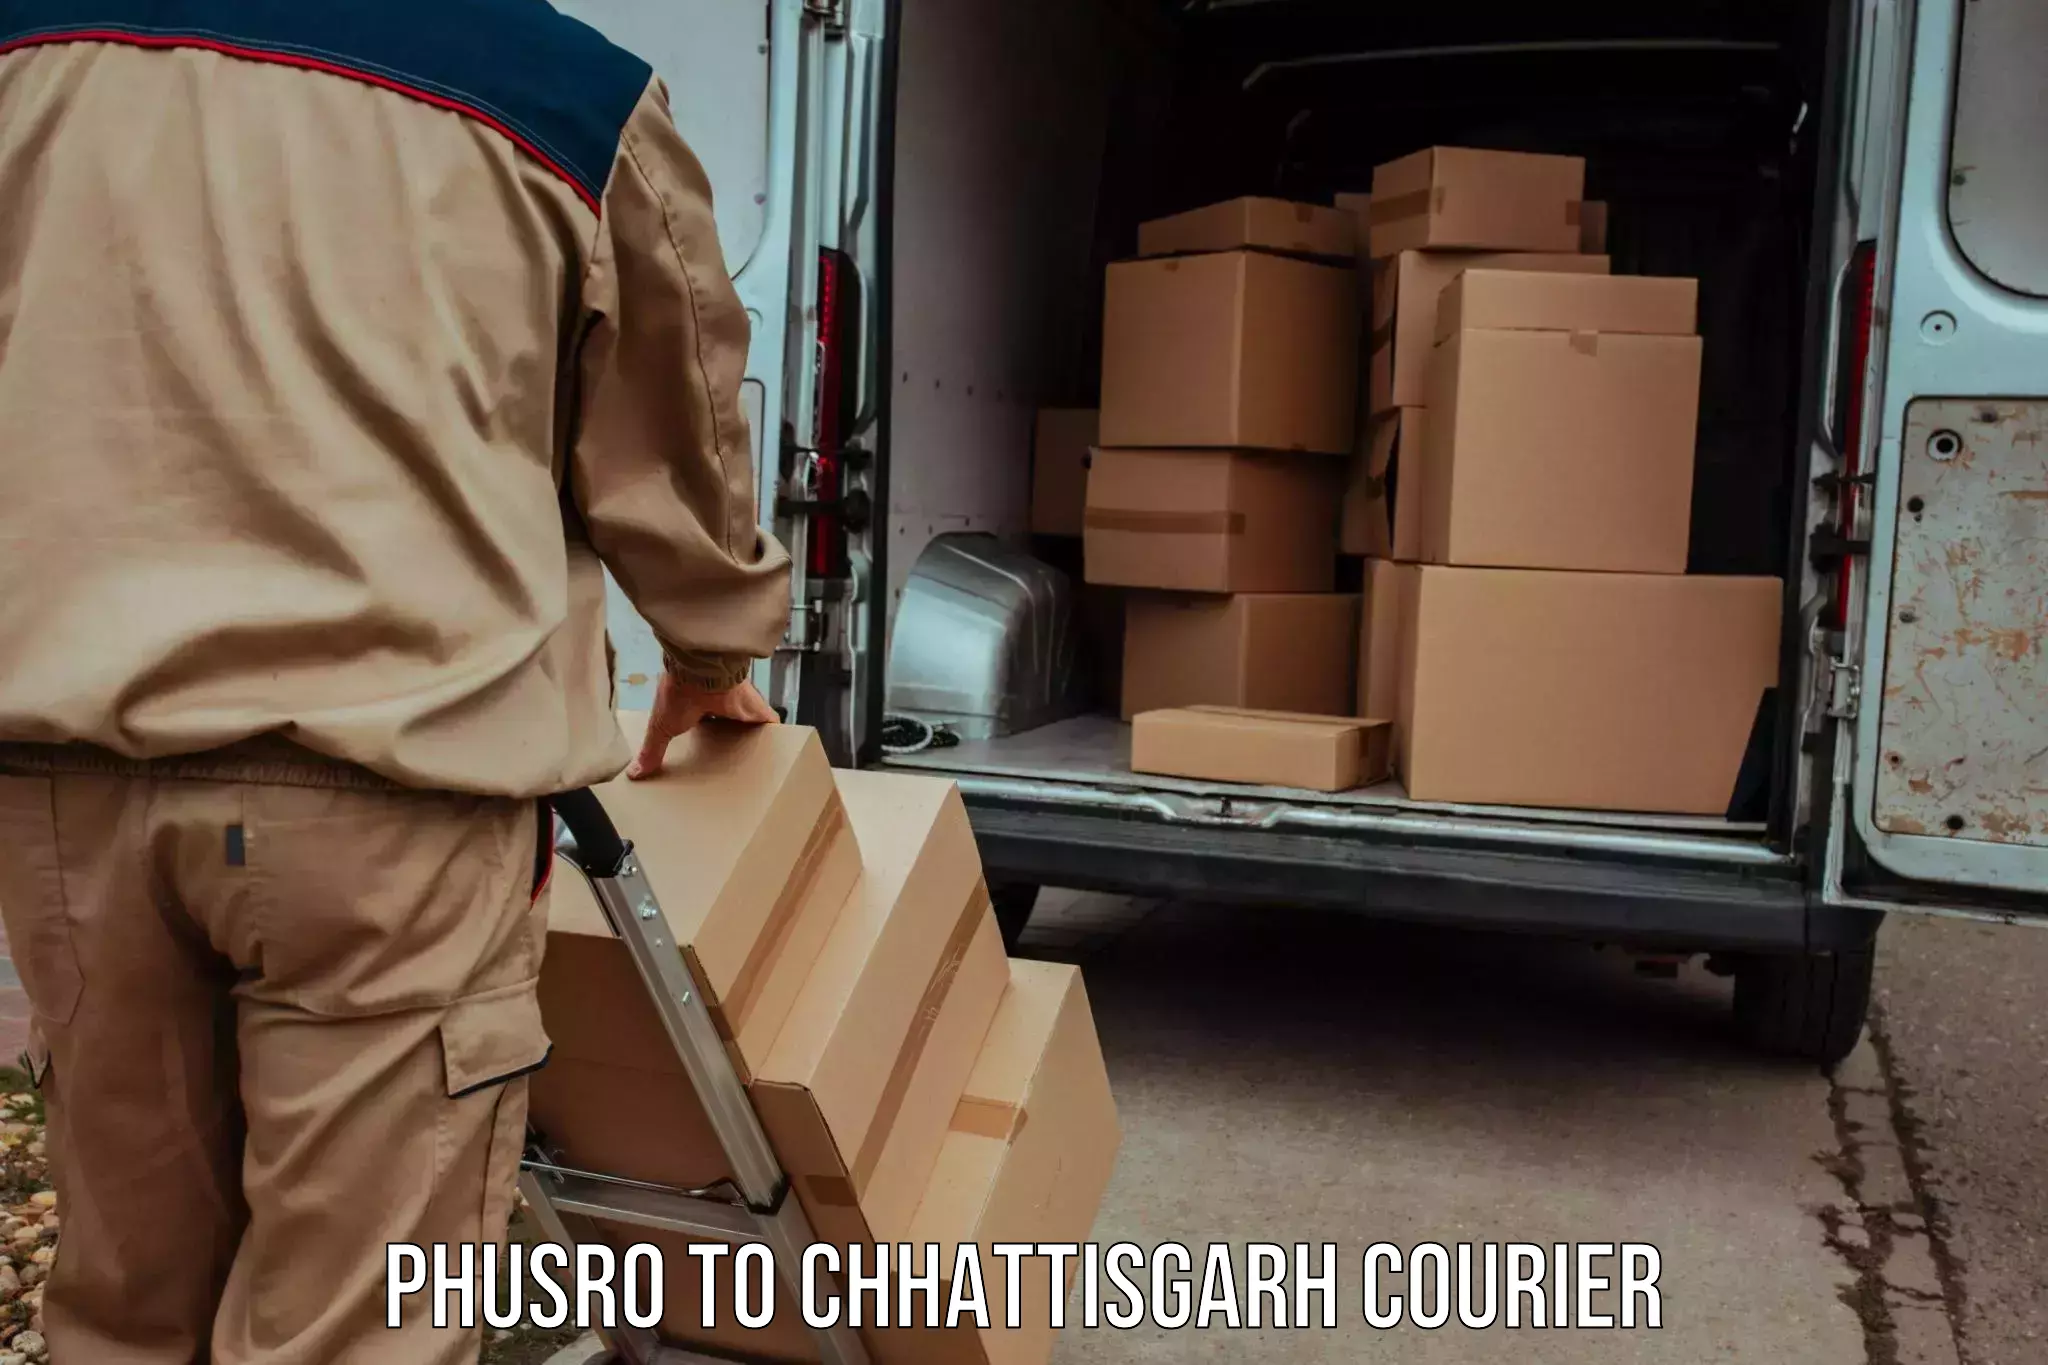 Courier service comparison Phusro to Chhattisgarh